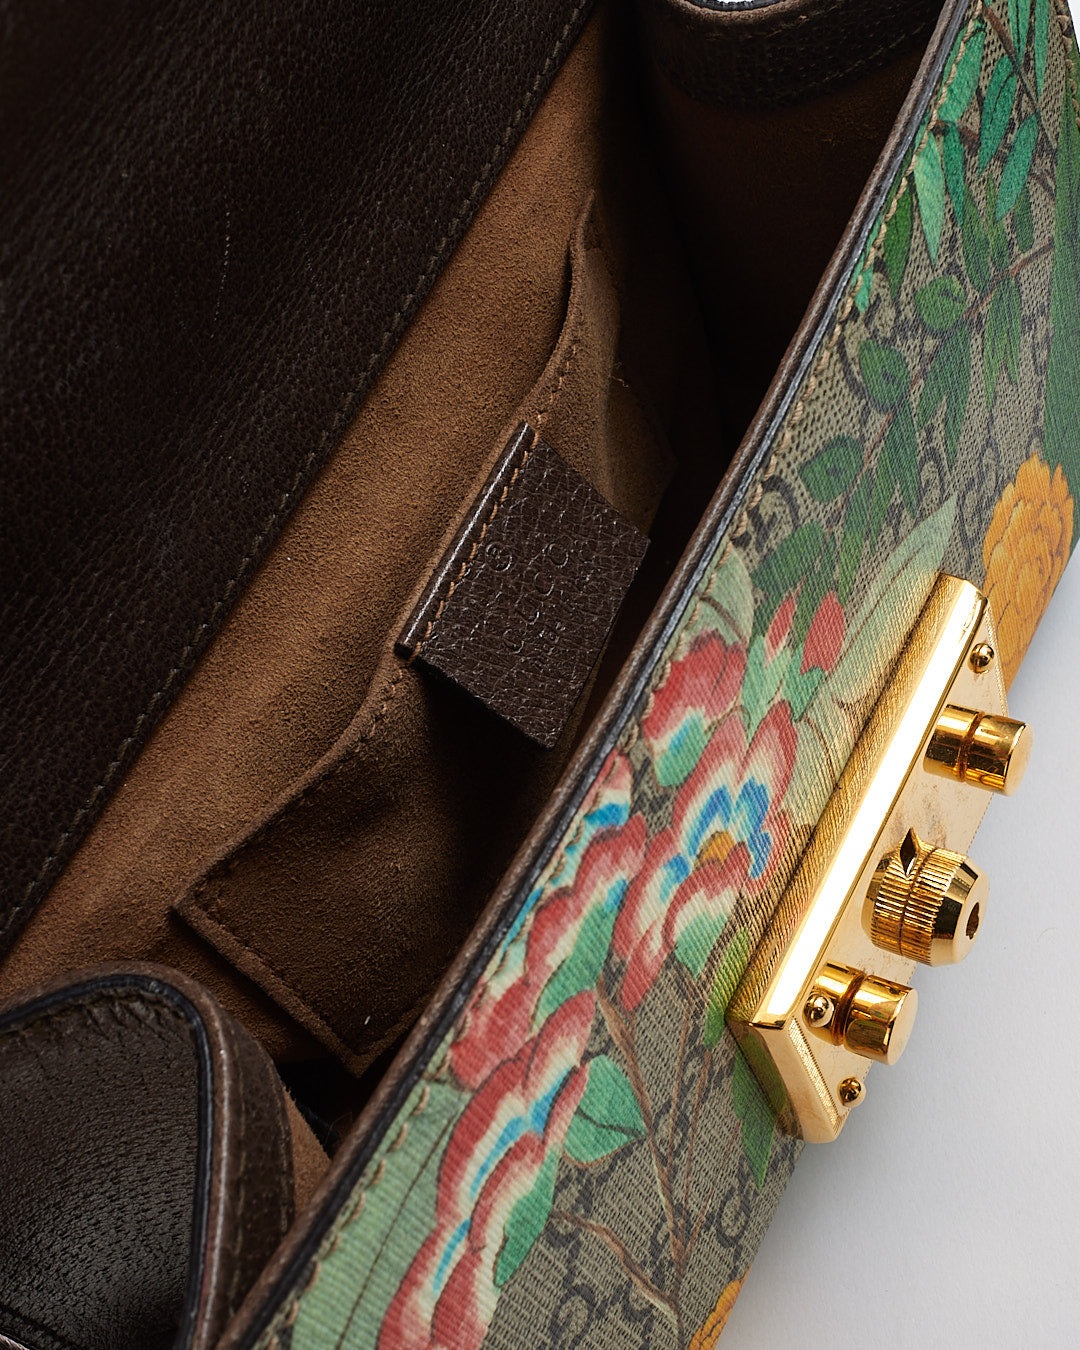 Gucci GG Supreme Monogram Tian (Floral) Petit sac à bandoulière avec cadenas